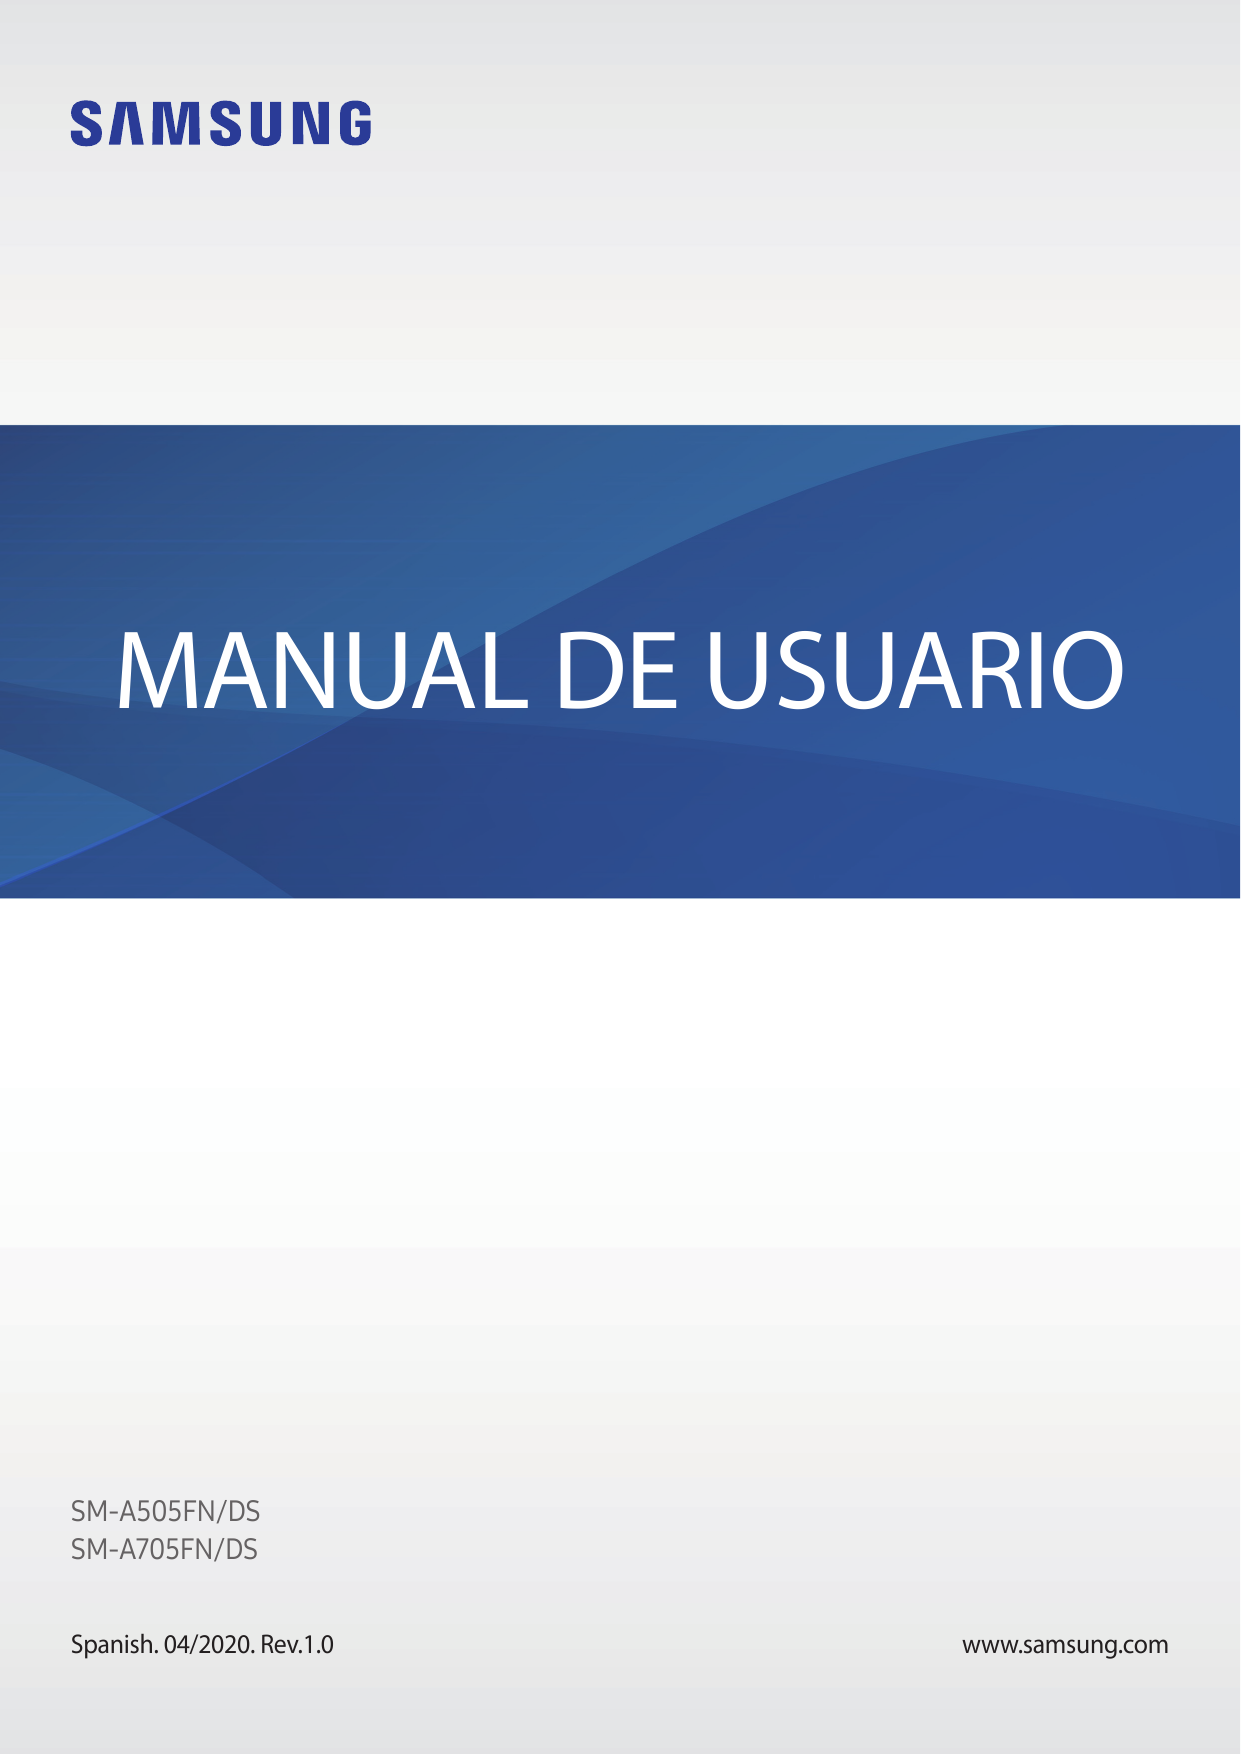 MANUAL DE USUARIOSM-A505FN/DSSM-A705FN/DSSpanish. 04/2020. Rev.1.0www.samsung.com